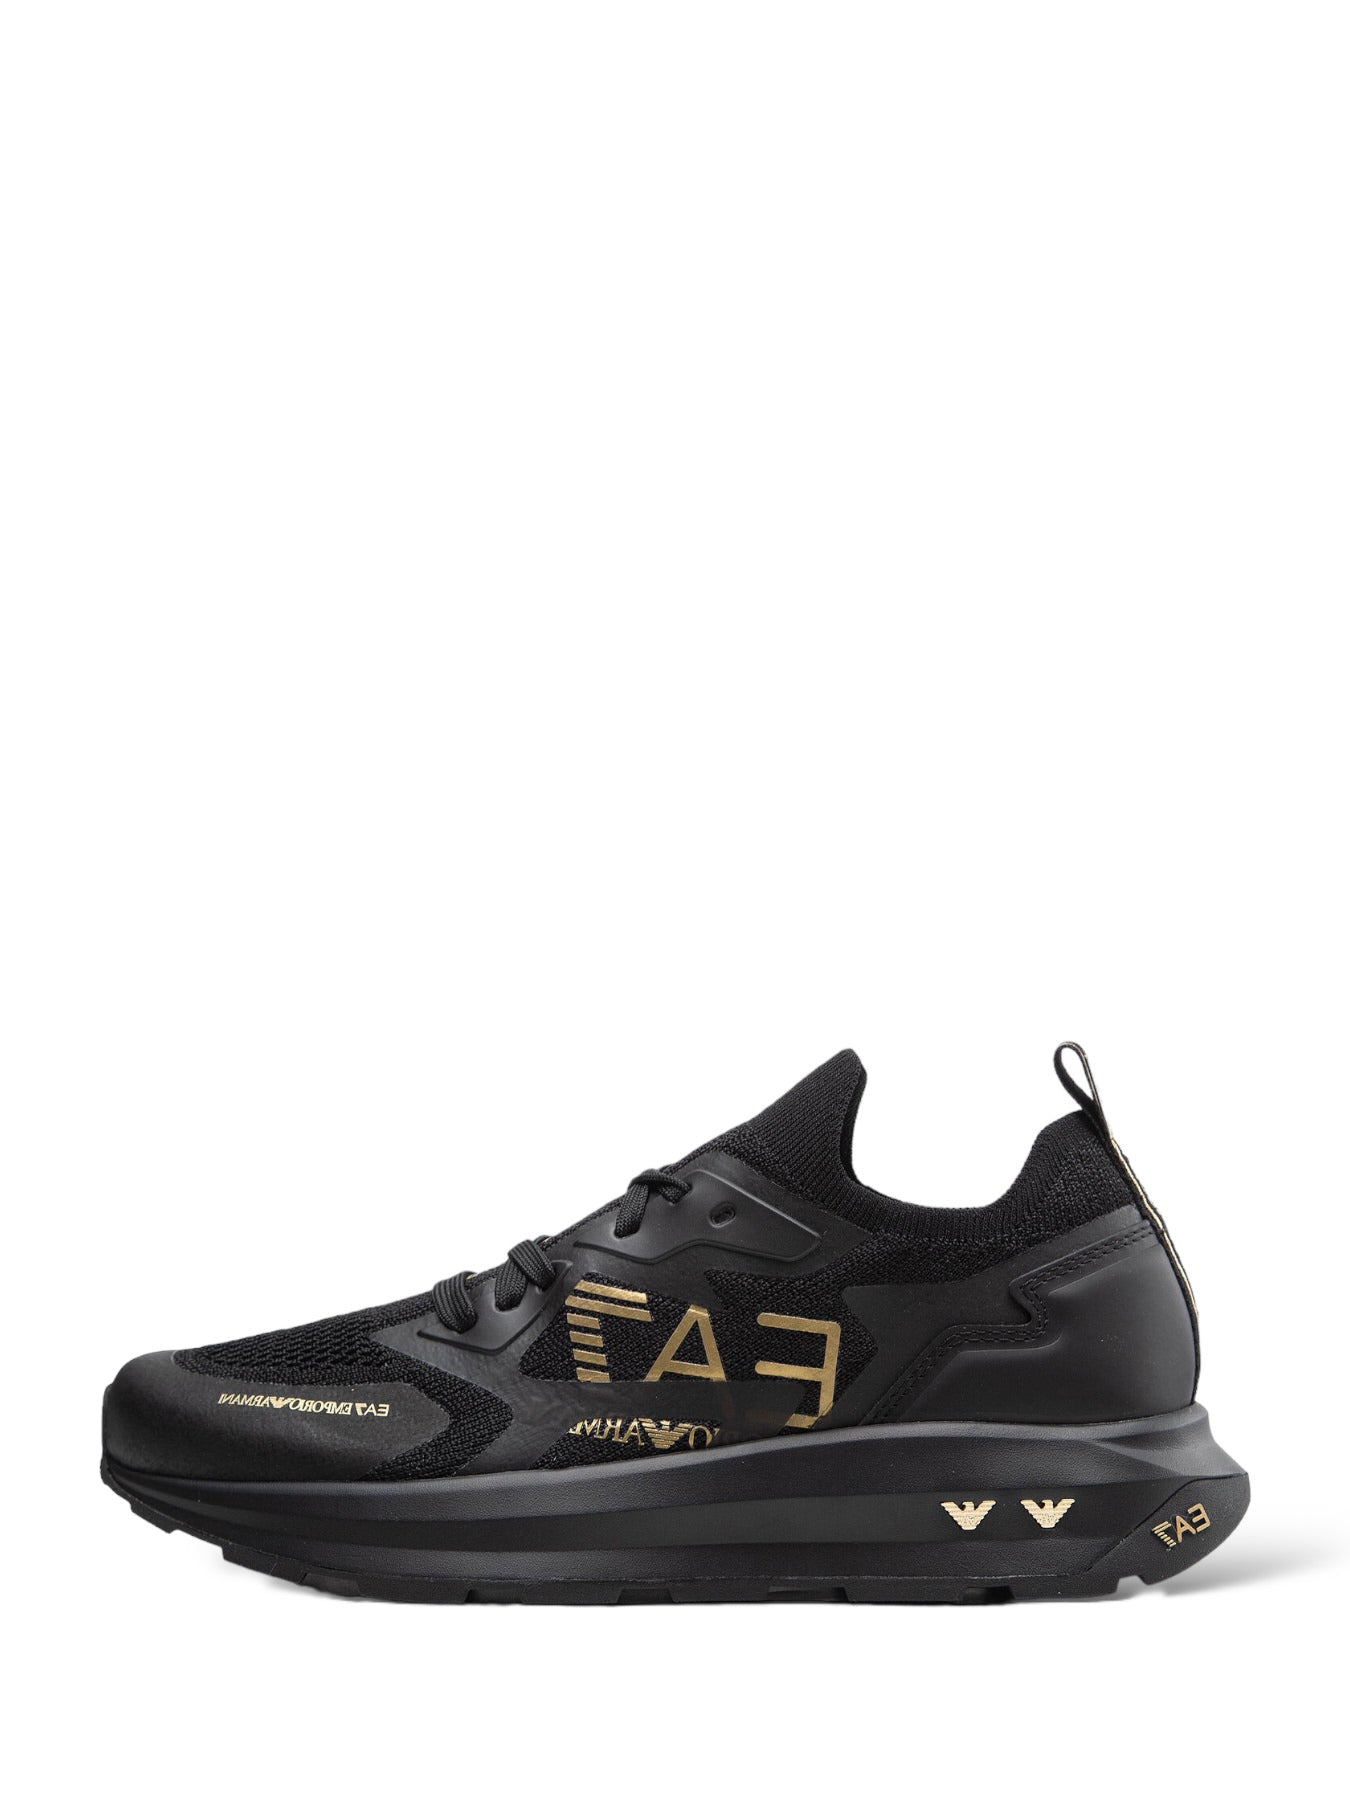 X8x113 Triple Black, Gold Sneakers